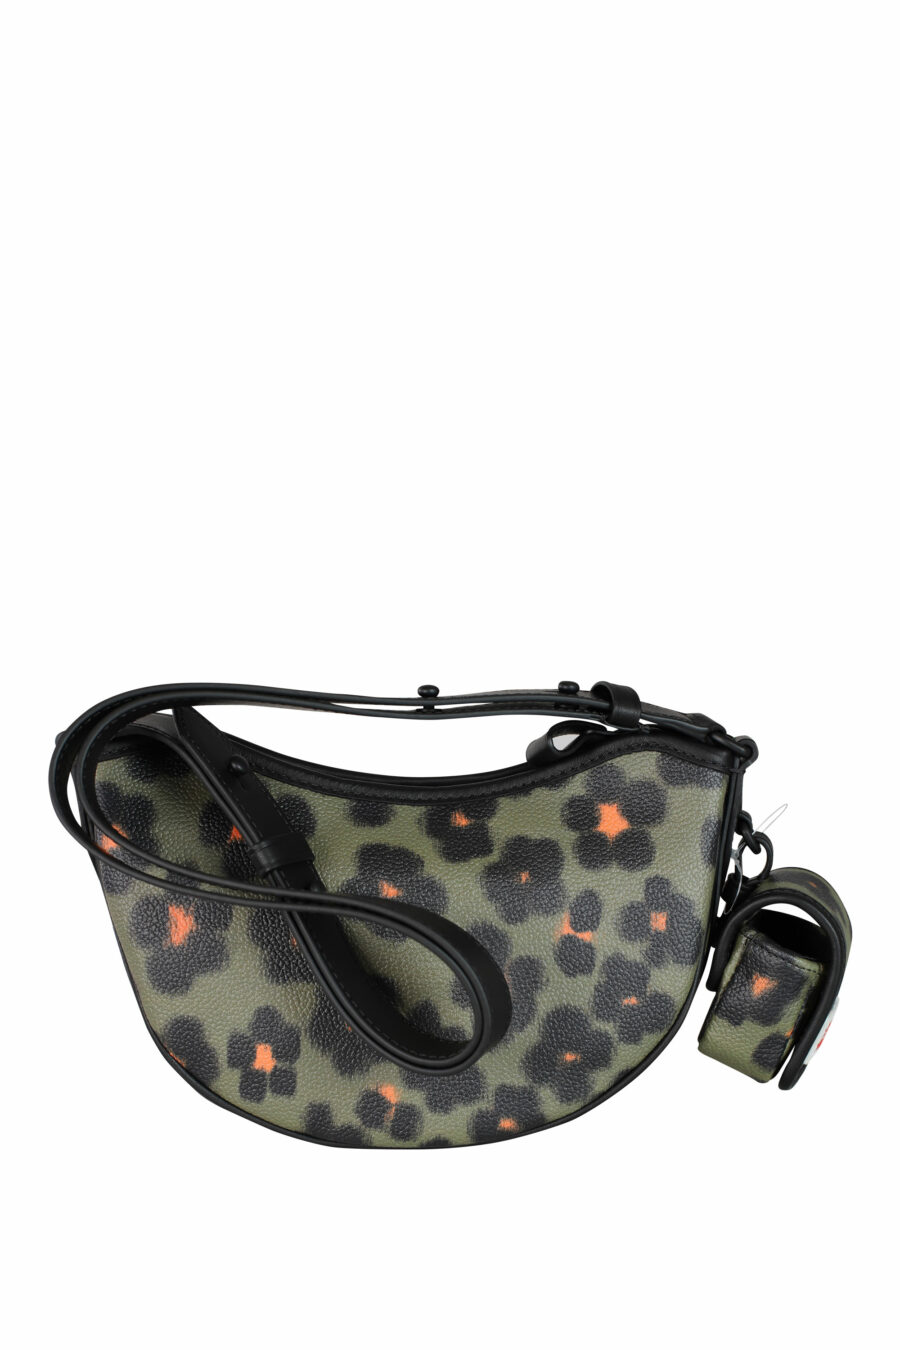 Green and orange leopard print shoulder bag - IMG 3548